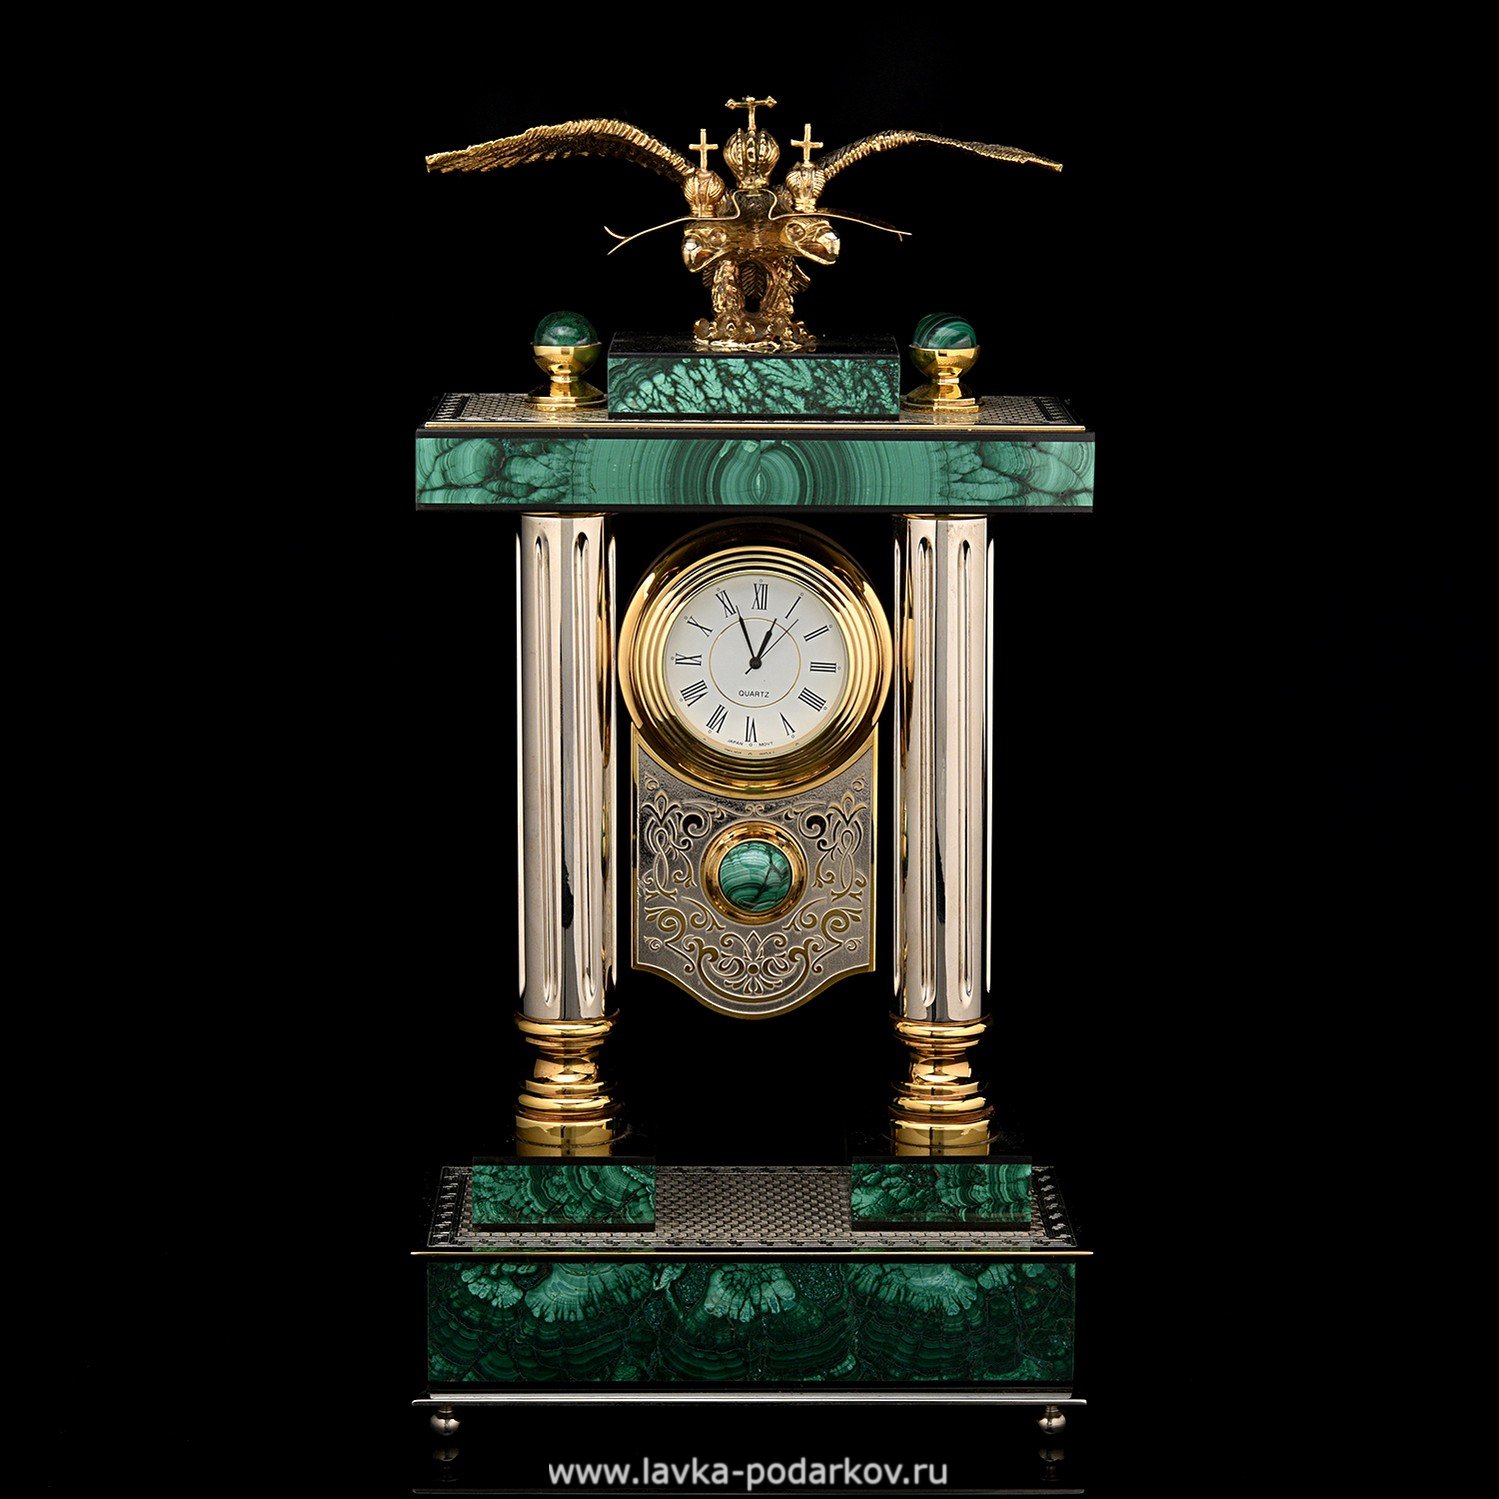 Магазины часов златоуст. Часы Златоустовского часового. Часы Златоустовские металлические. Интерьерные часы Златоуст. Часы Орел Златоуст.